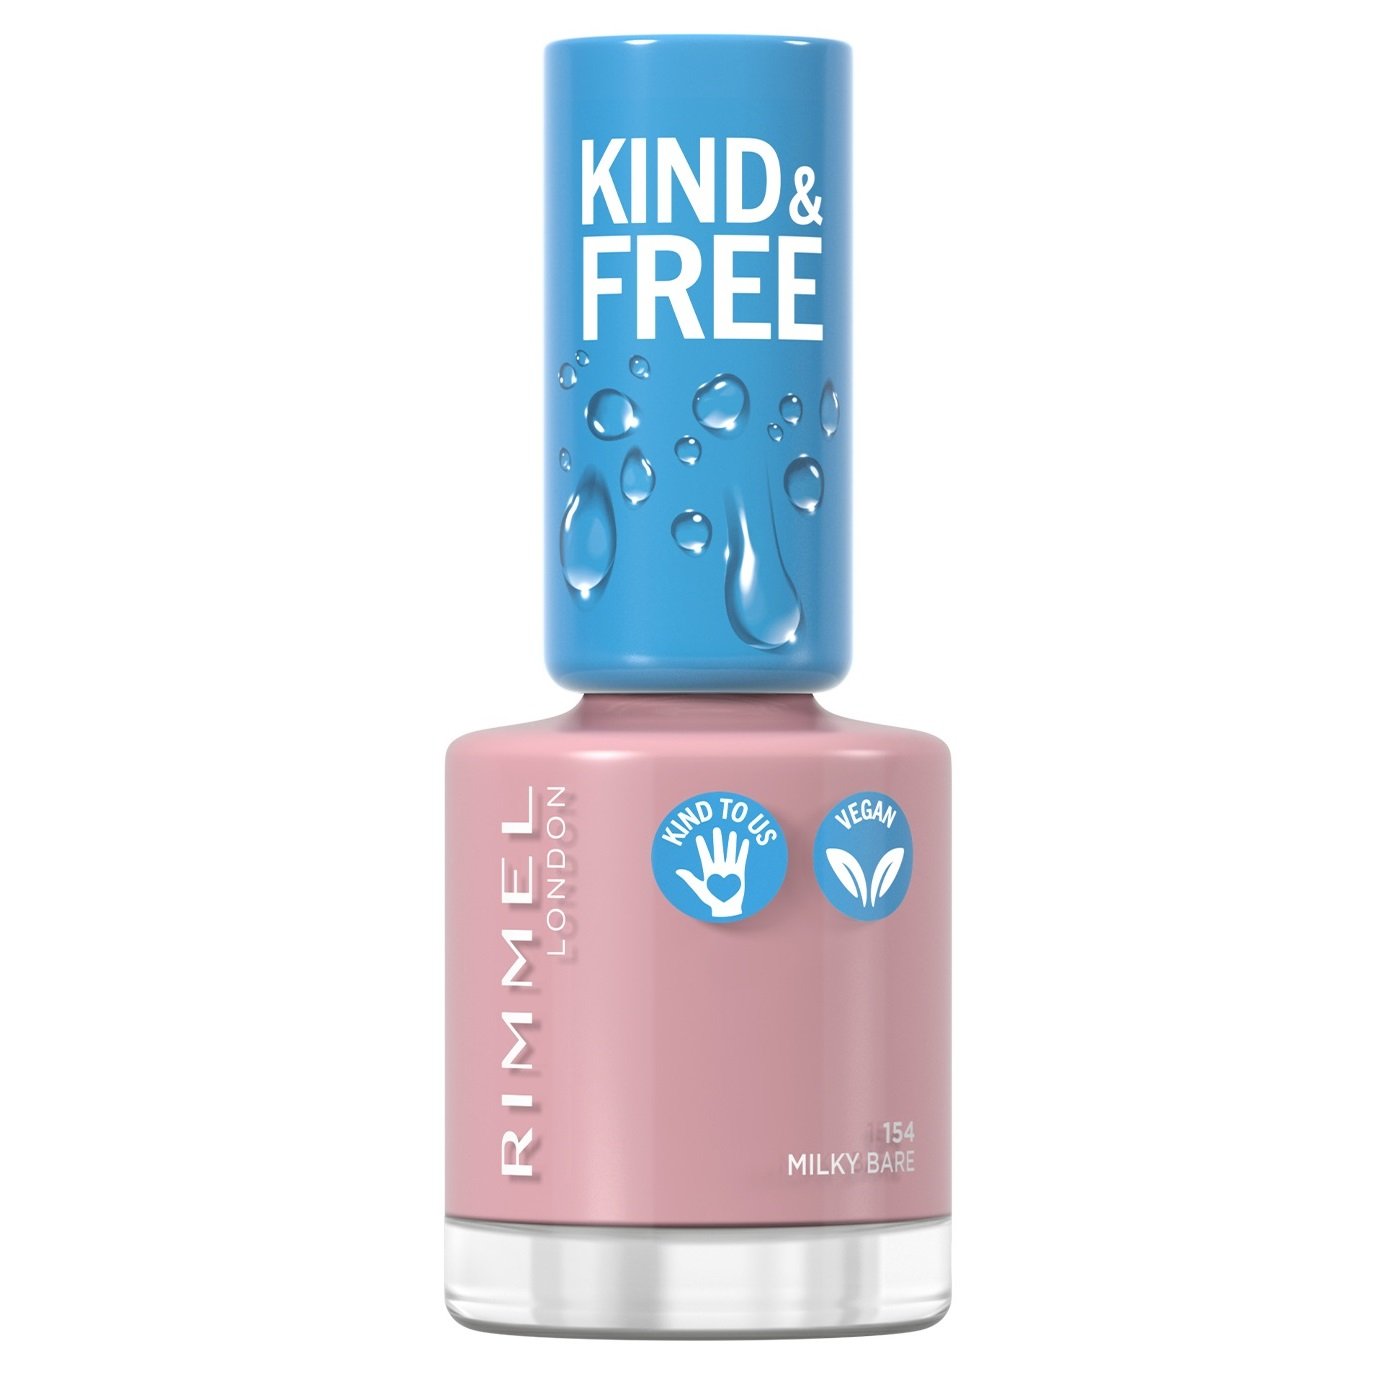 Лак для нігтів Rimmel Kind&Free, відтінок 154 (Milky Bare), 8 мл (8000019959400) - фото 1